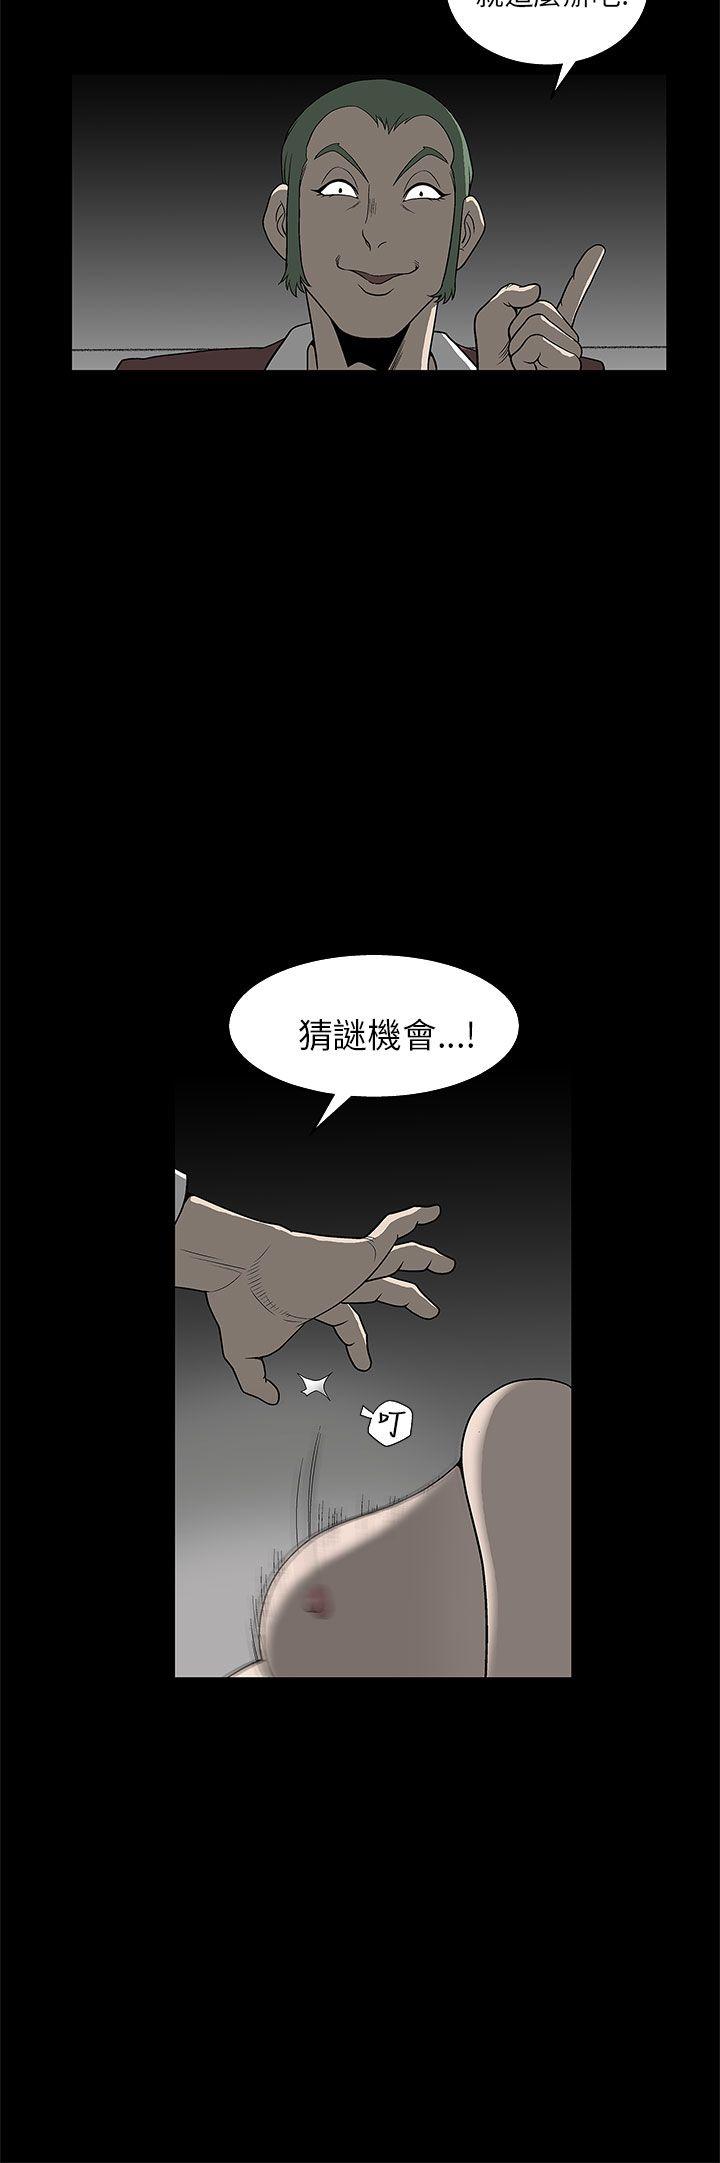 韩国污漫画 煦娜 第5话 17